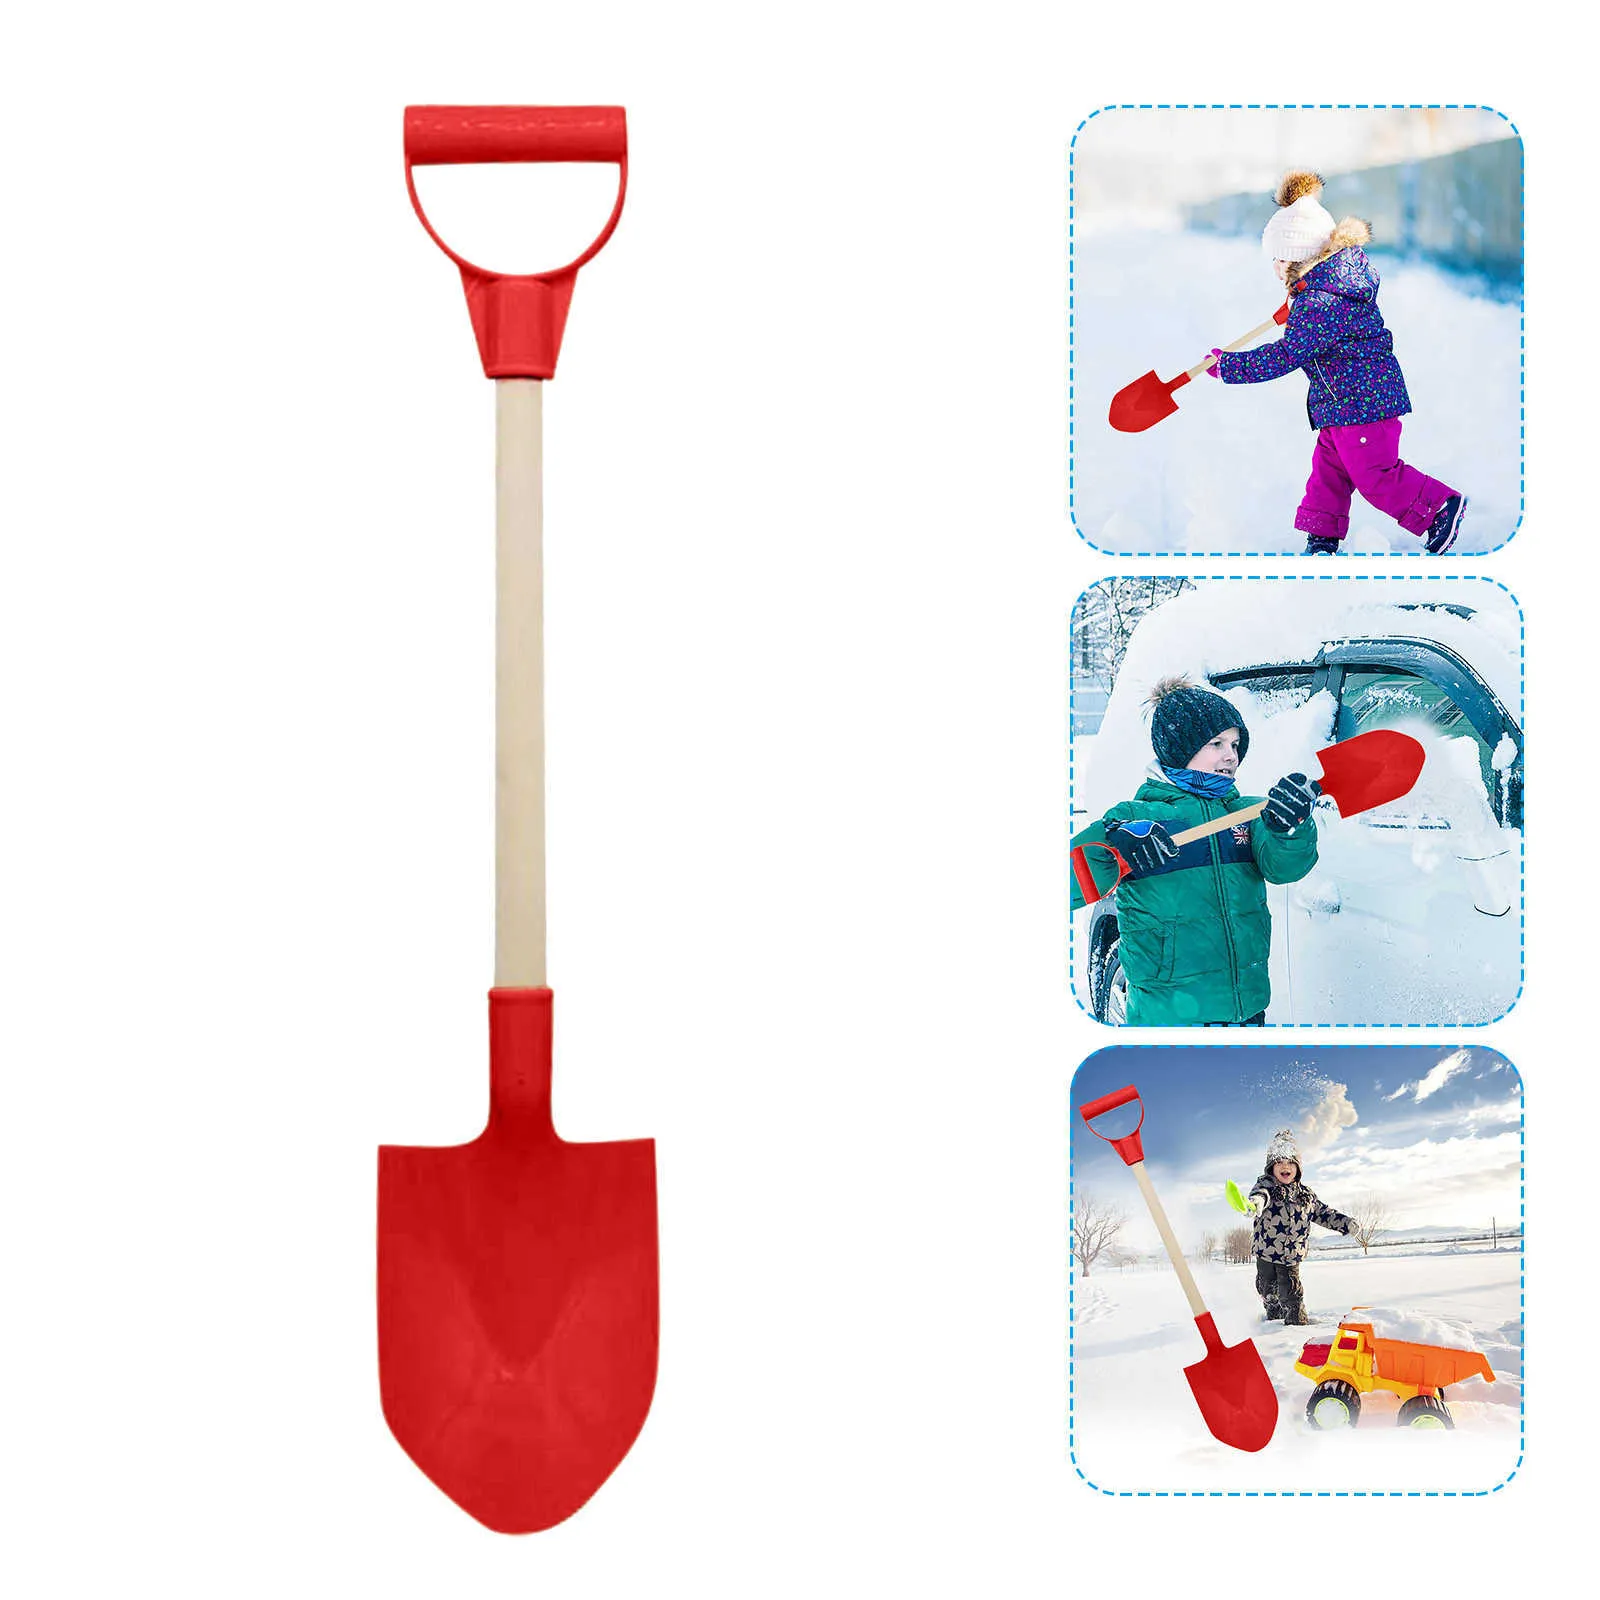 1 stks kinderen sneeuw schop kinderen strand schop met houten handvat spelen zand tool spelen schoppen spelen huis speelgoed zomer # P30 y0809